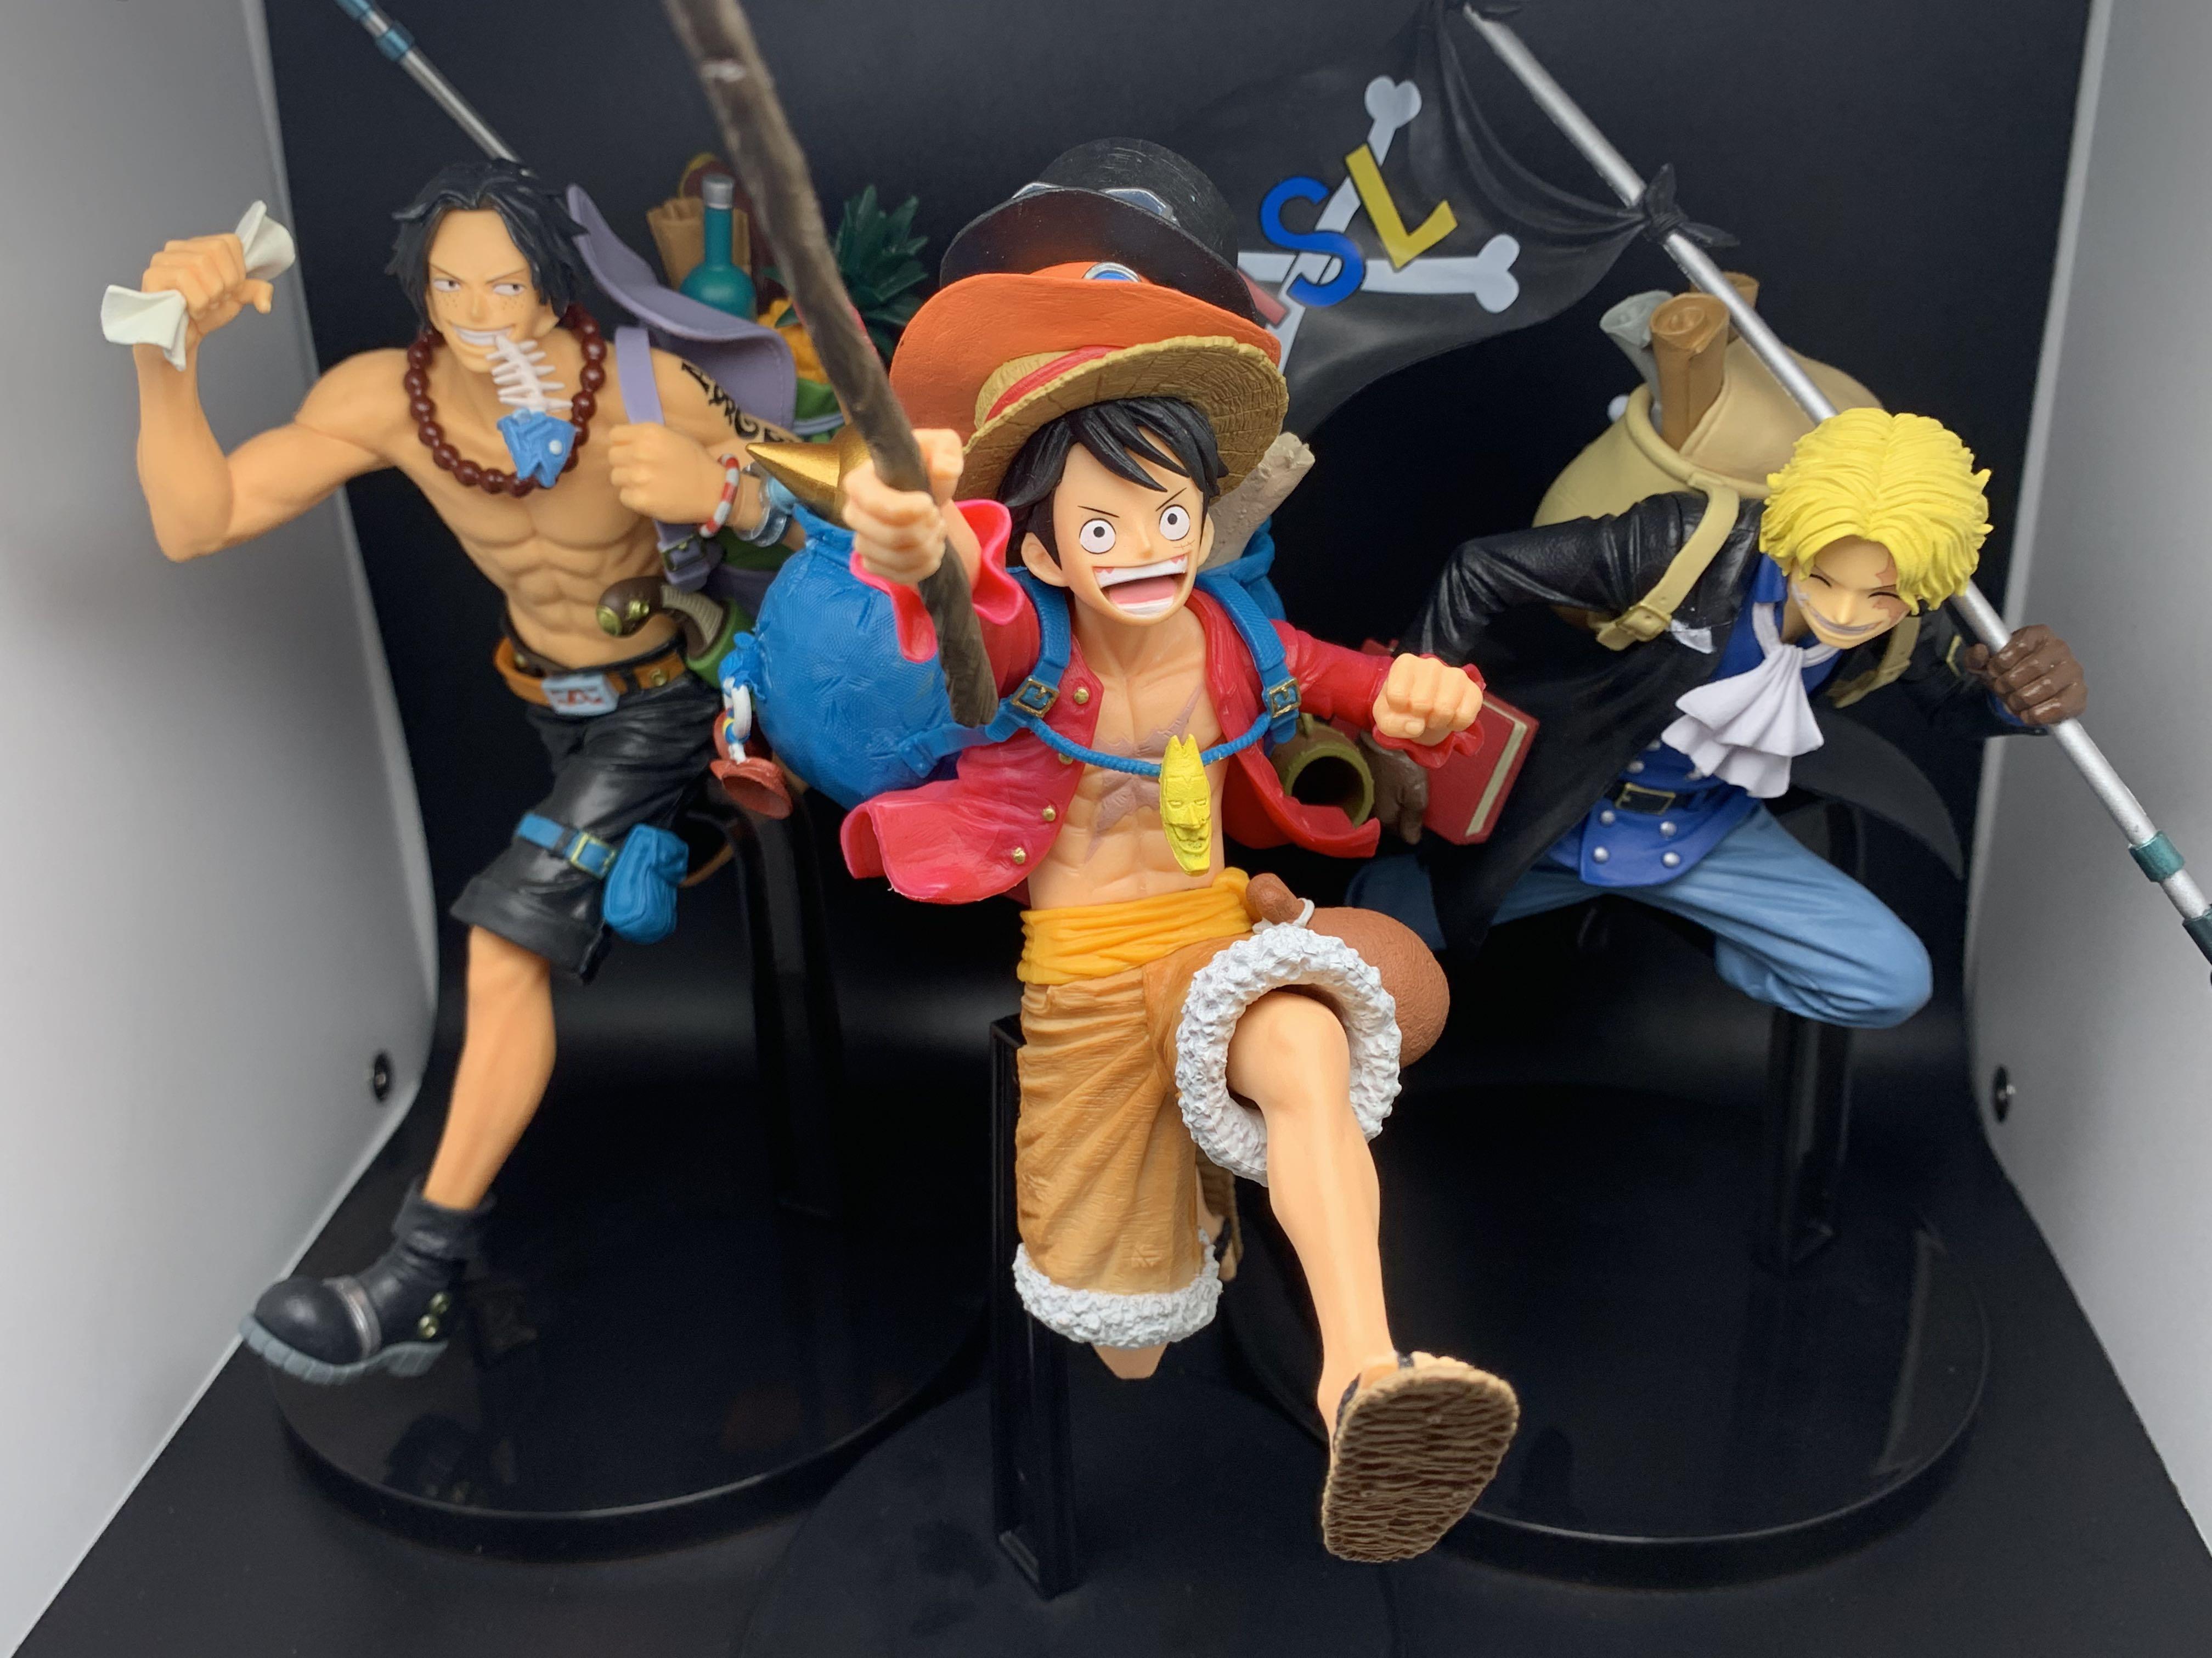 Grandline Special 三兄弟路飛薩波艾斯craneking One Piece 海賊王figure 興趣及遊戲 玩具 遊戲類 Carousell